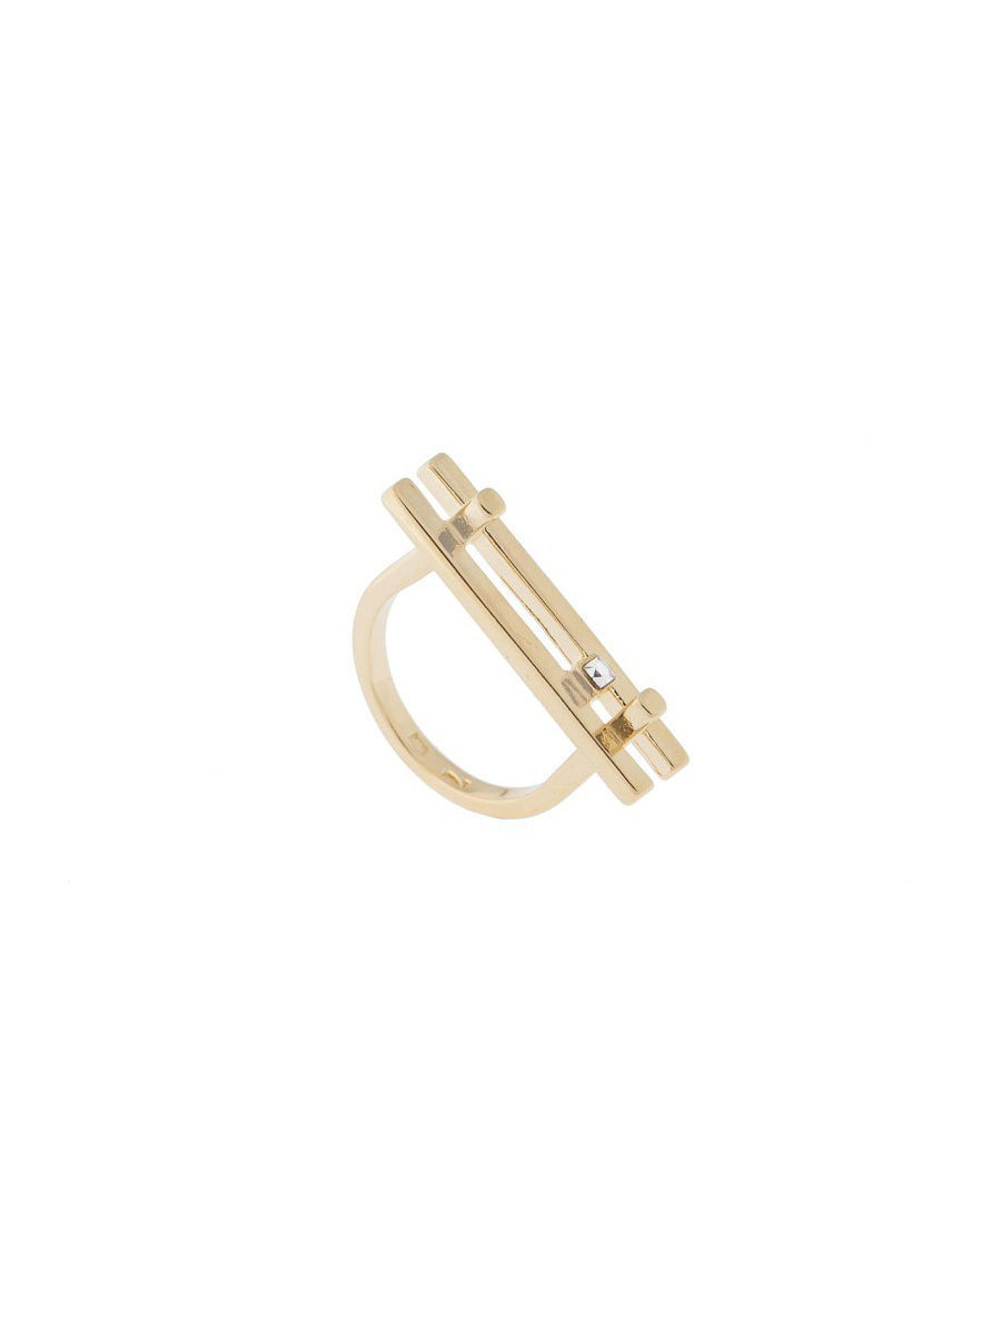 "Гудея" кольцо в золотом покрытии из коллекции "Линия судьбы" от Jenavi